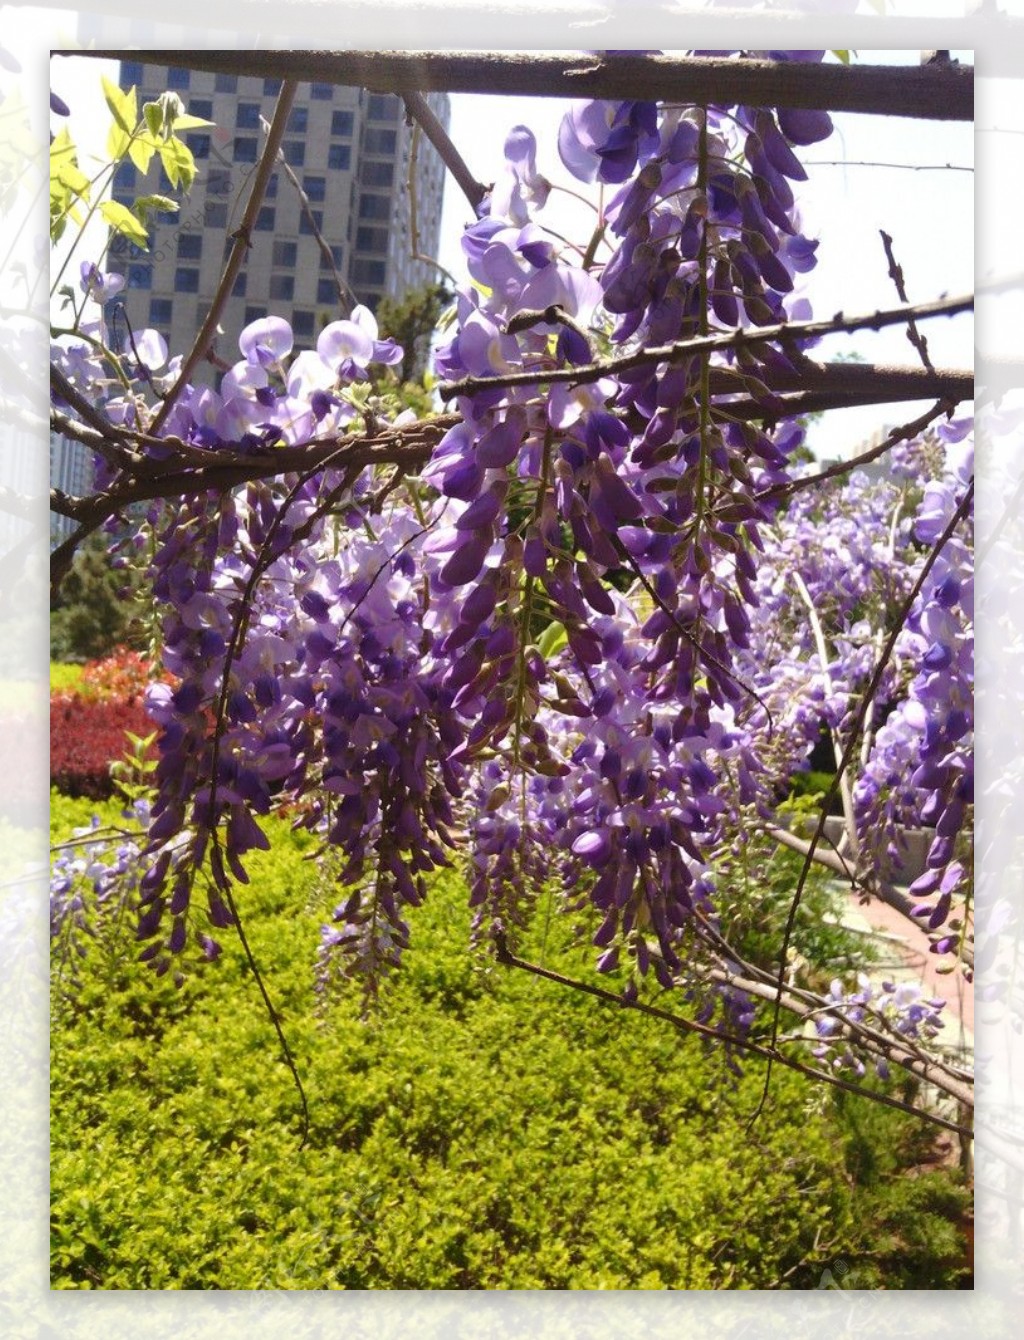 紫藤萝图片